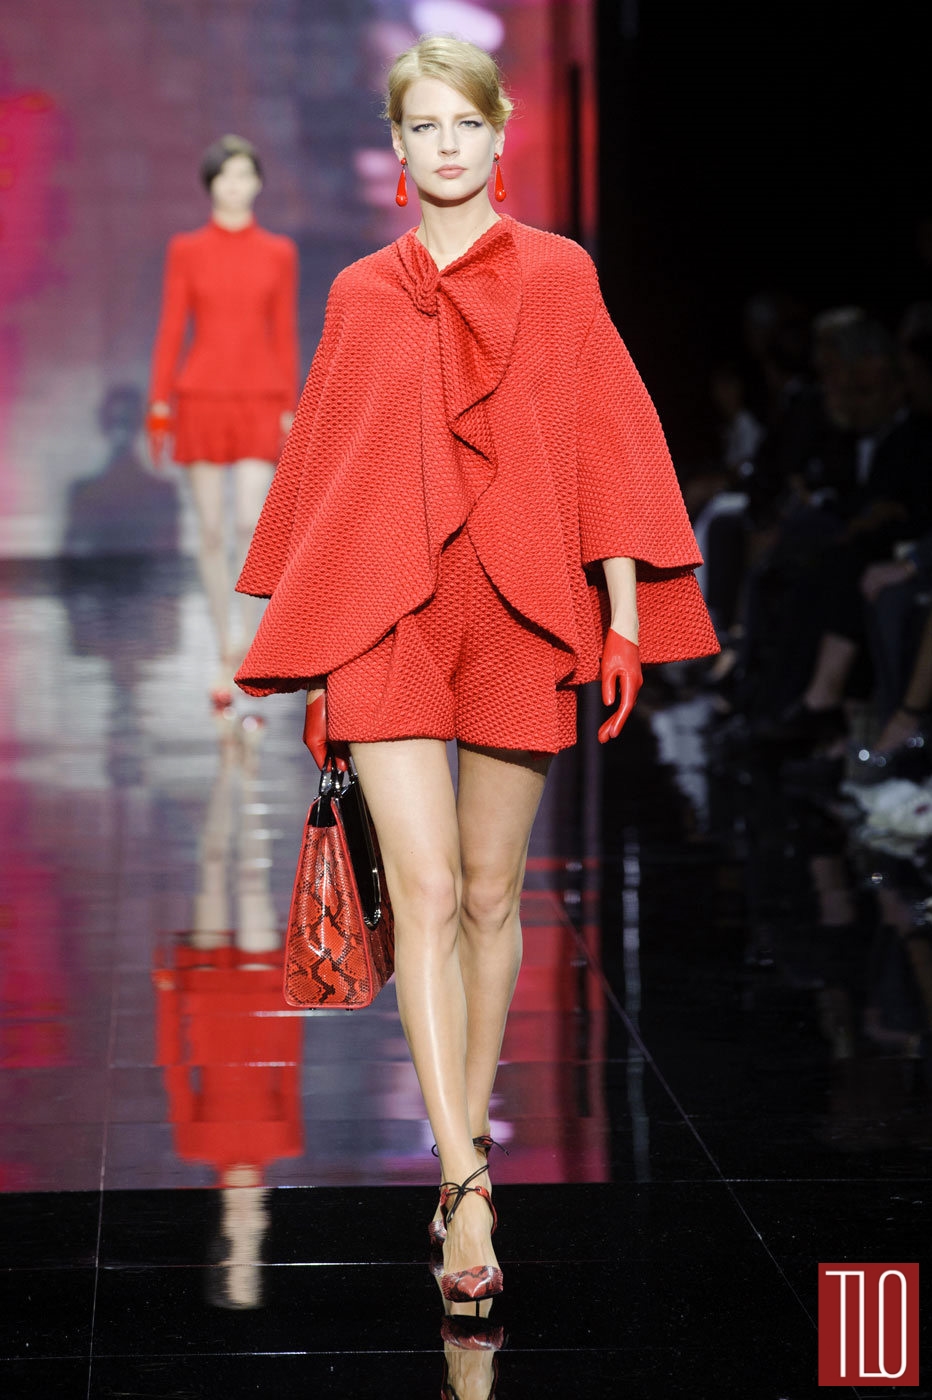 Armani-Prive-Fall-2014-Giorgio-Armani-Couture-Collection-Paris-Tom-Lorenzo-Site-TLO (1)